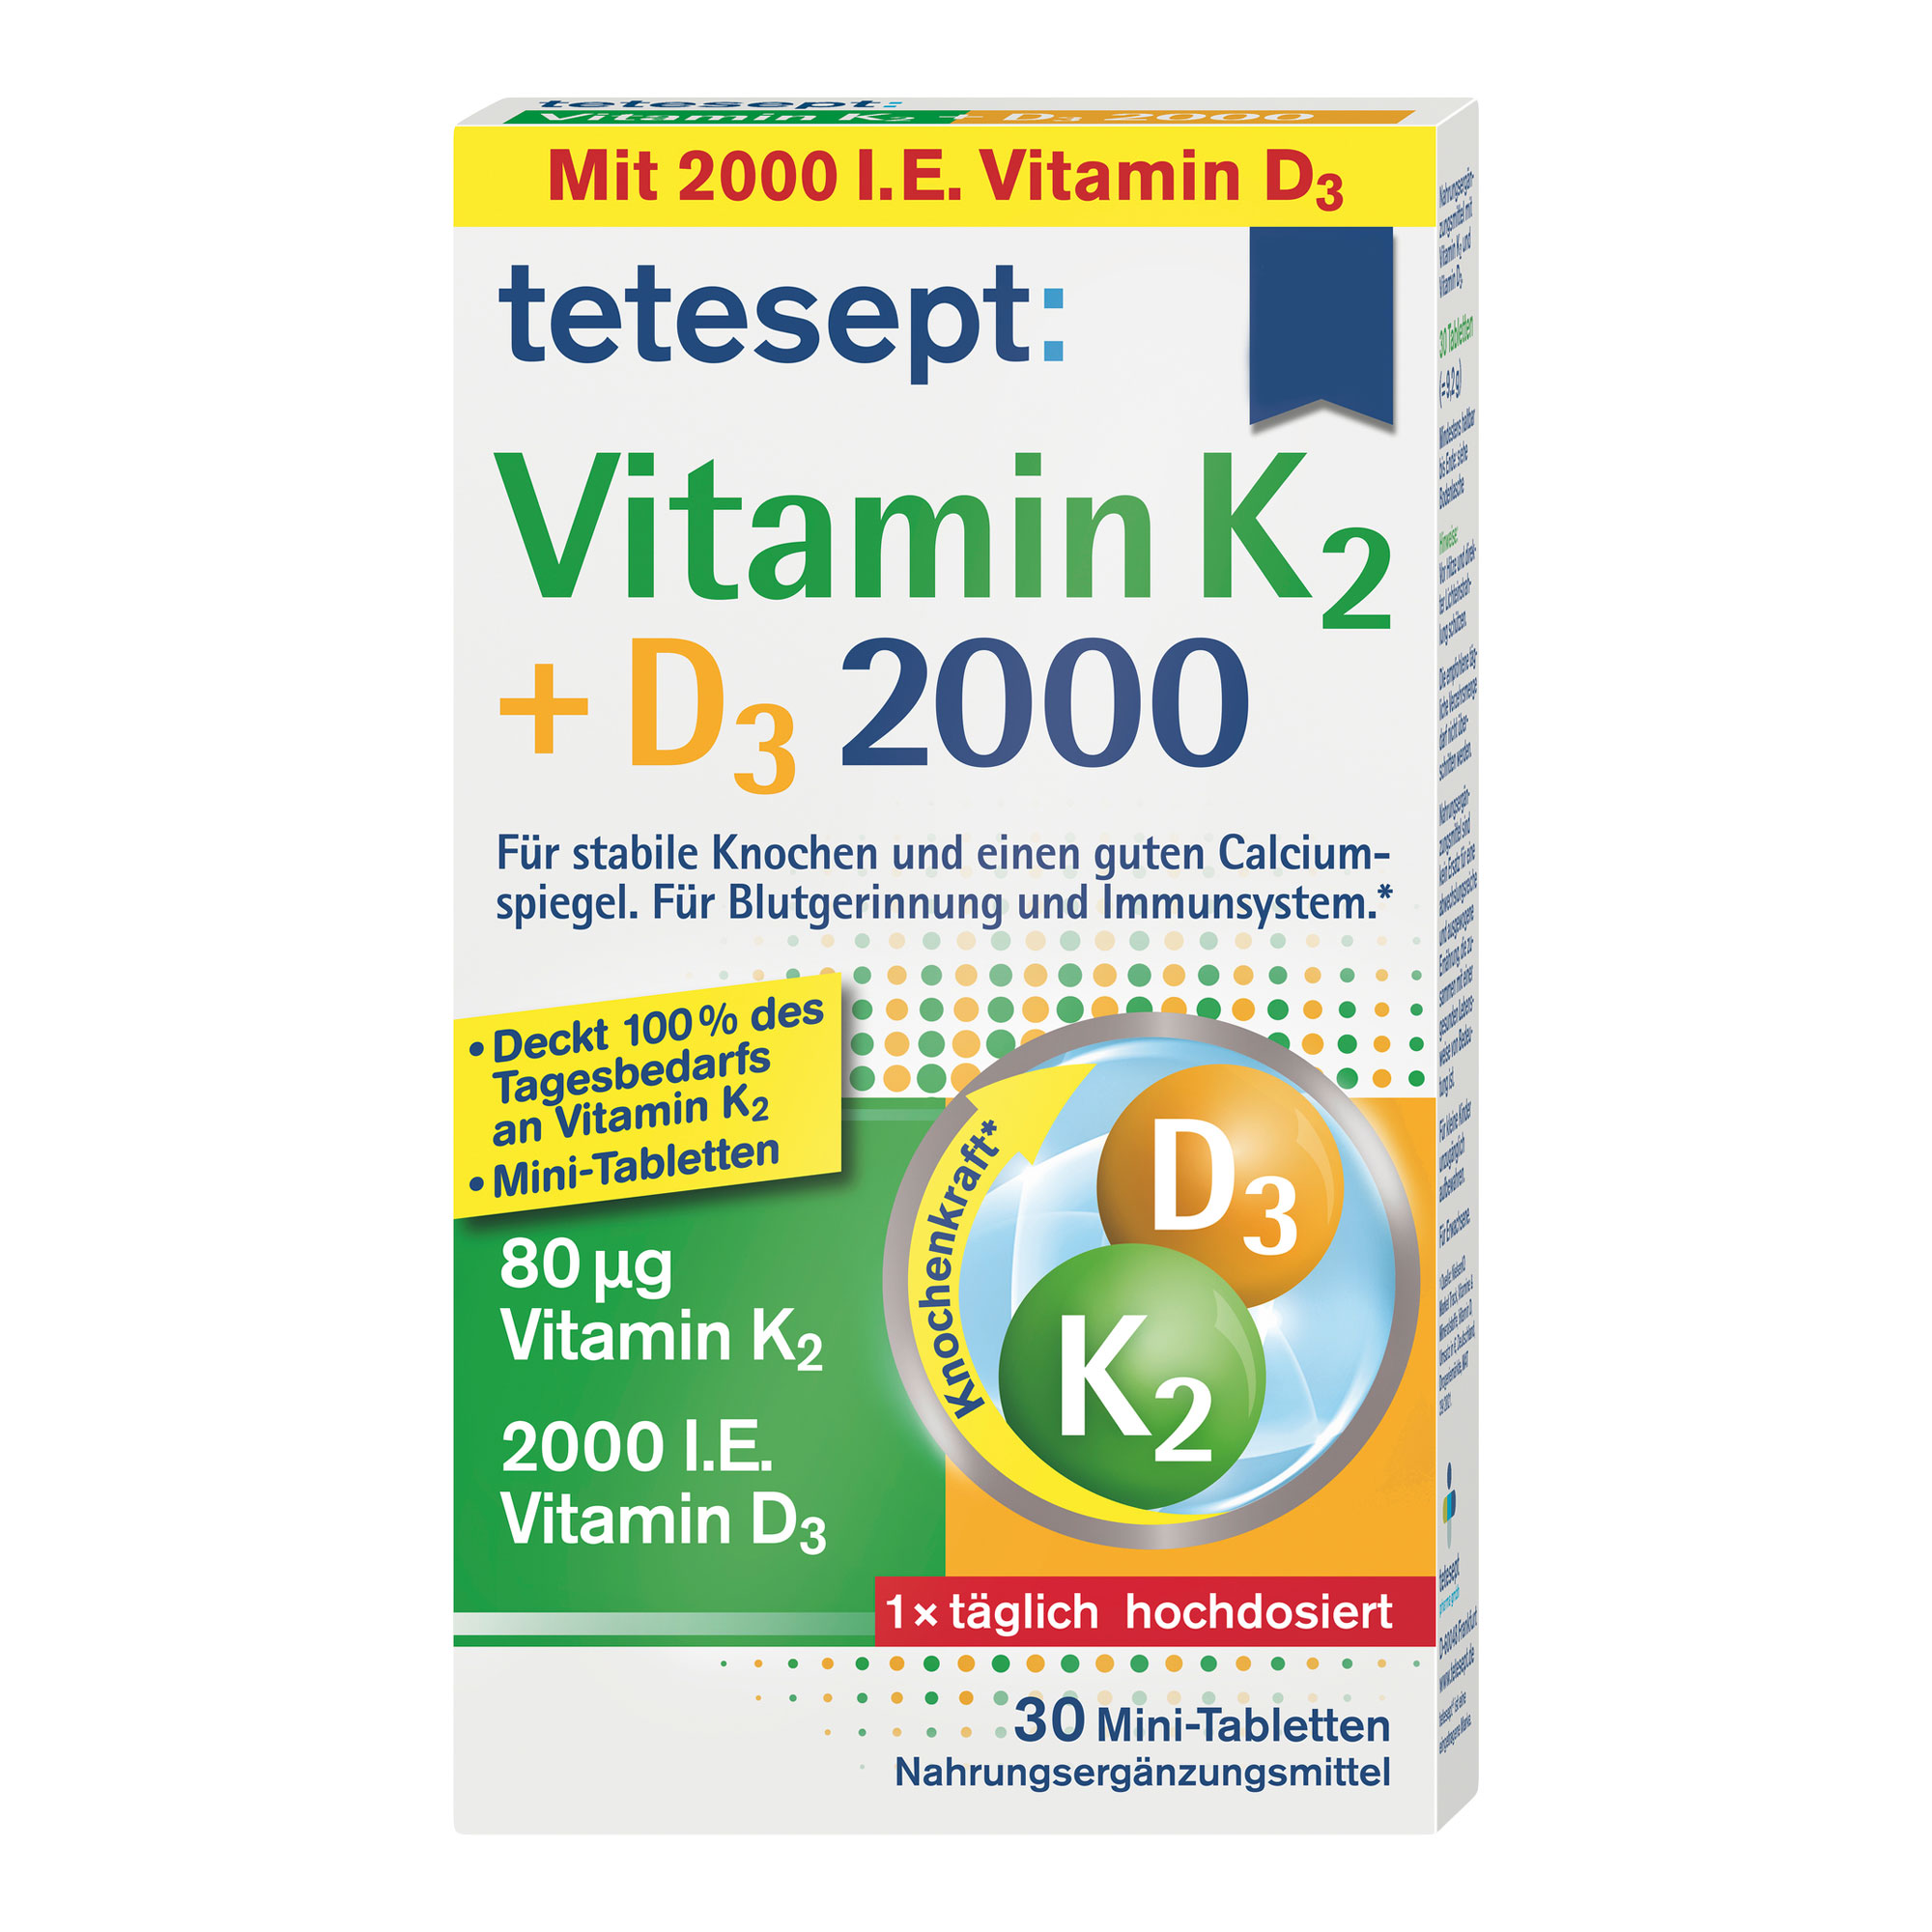 Nahrungsergänzungsmittel mit Vitamin K2 und Vitamin D3.